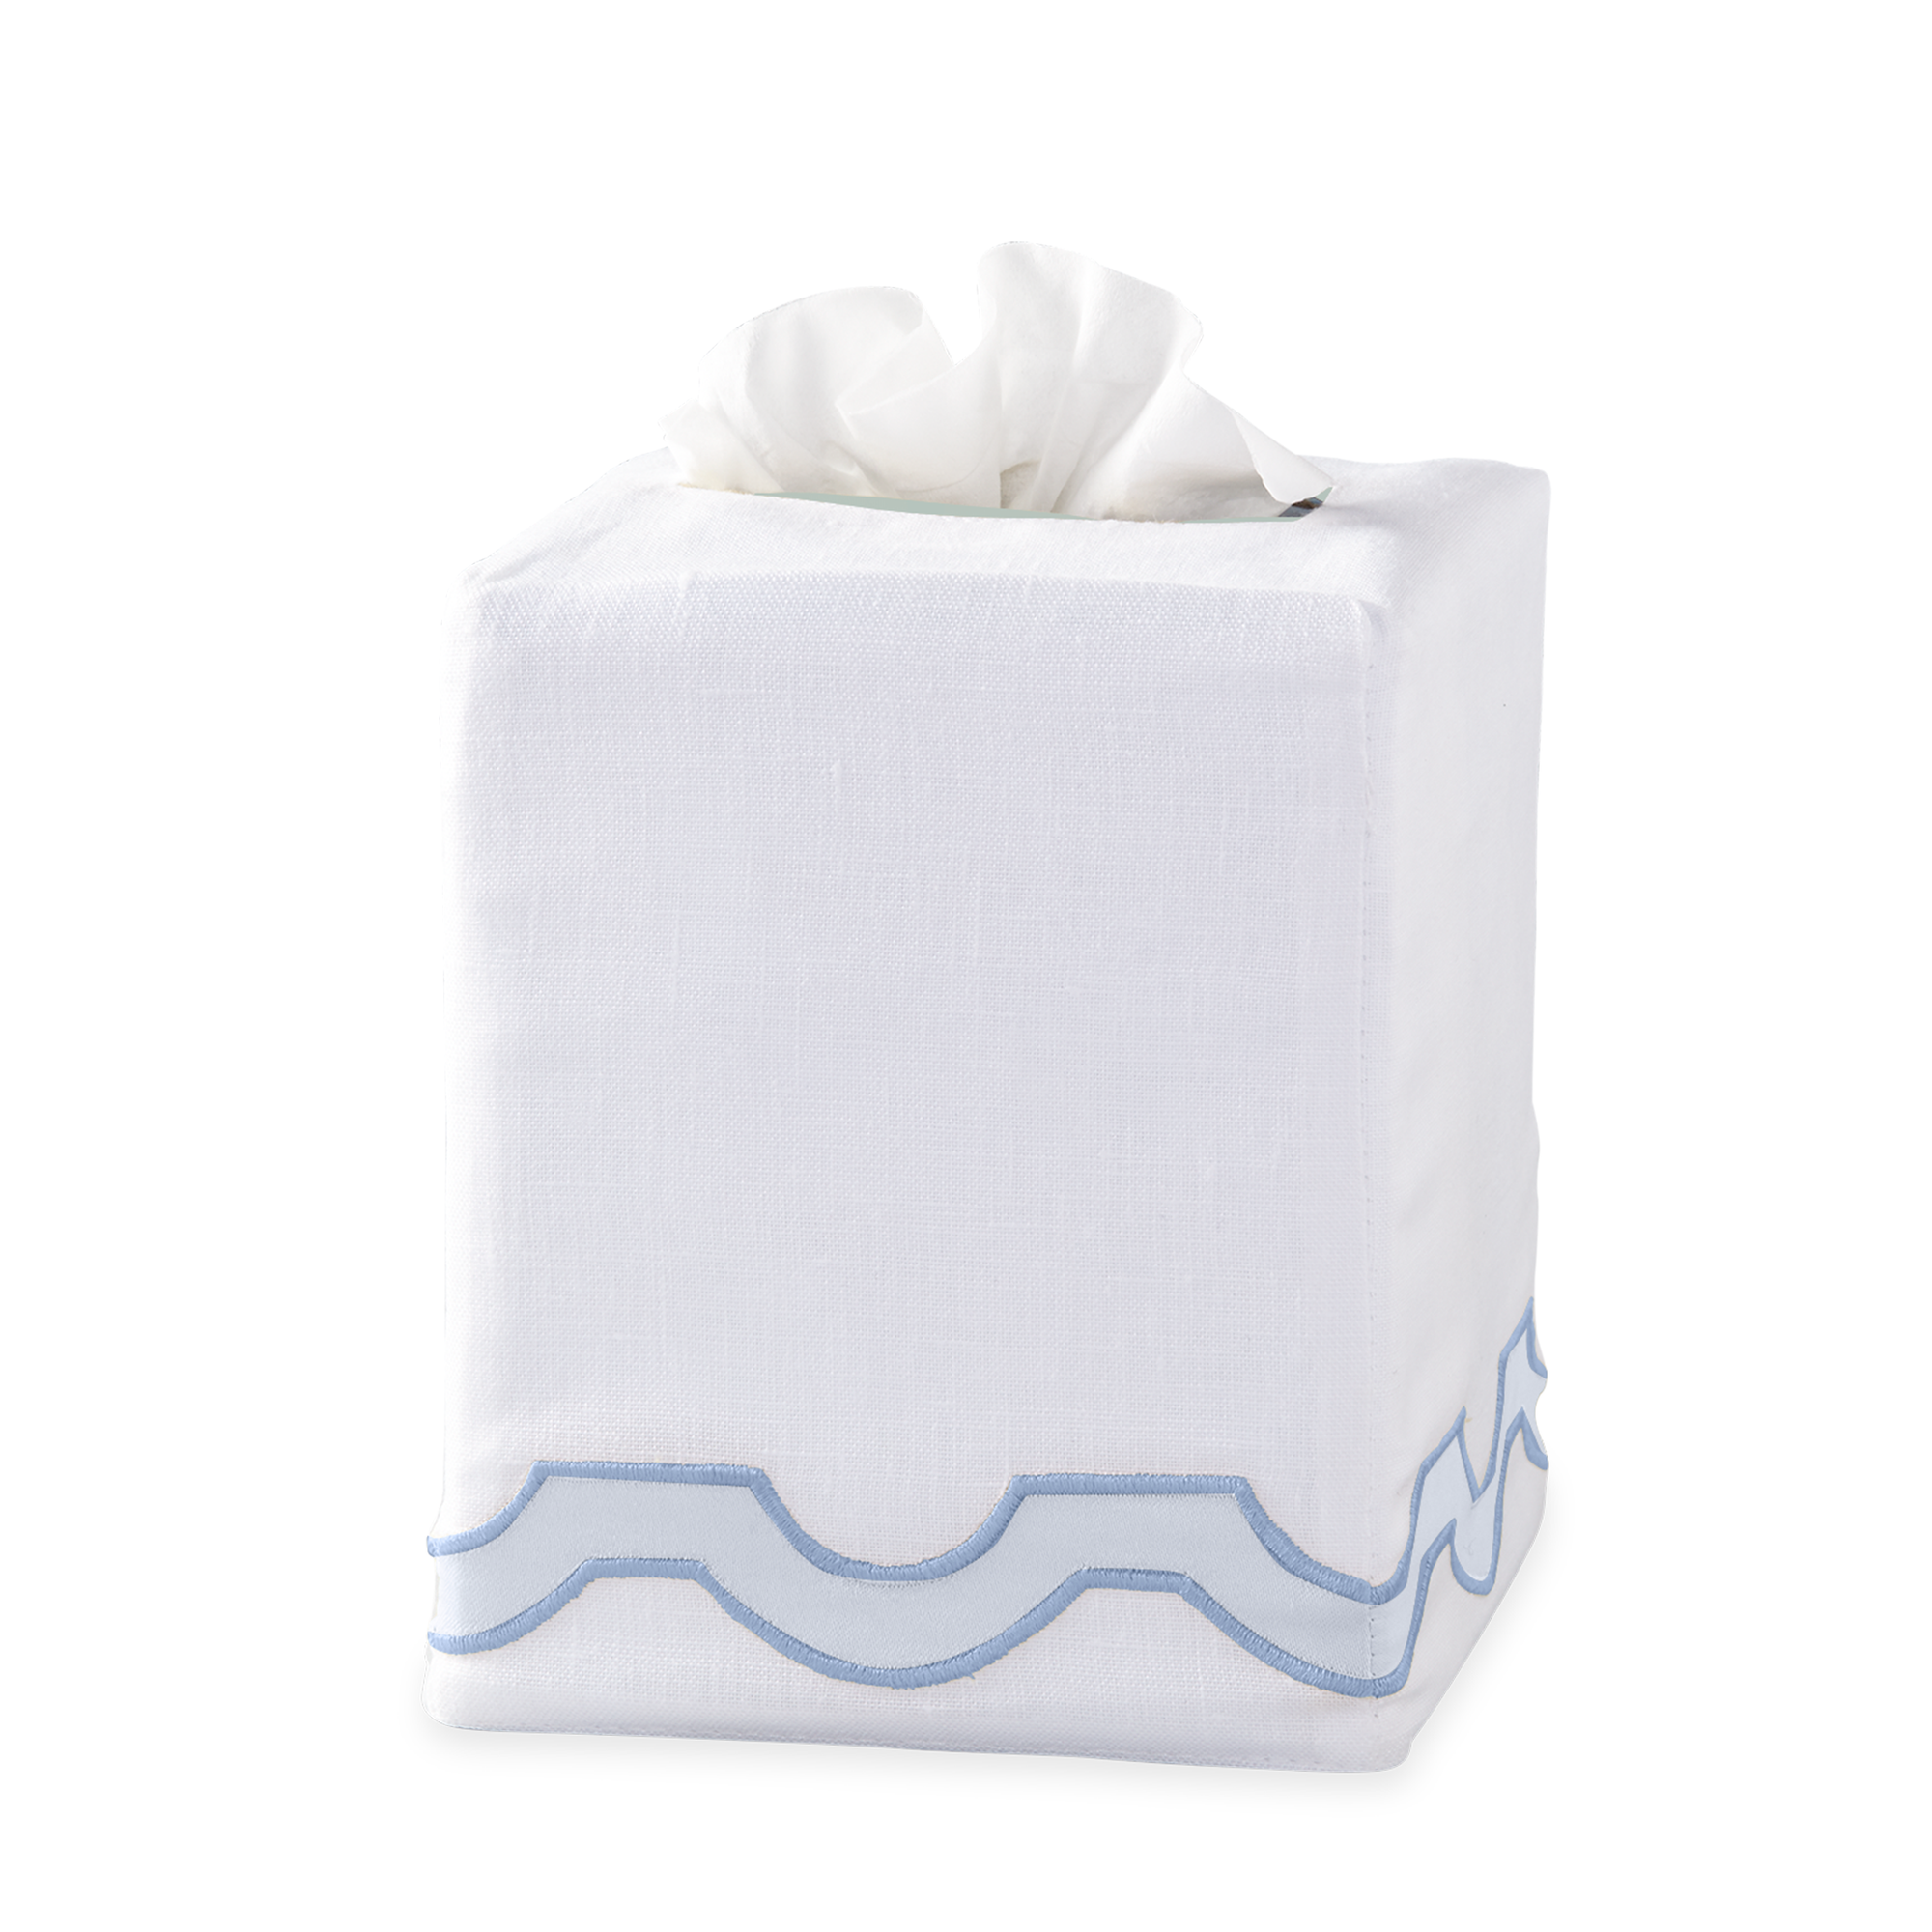 Silo Image of Matouk Mirasol Tissue Box Cover in Blue Color